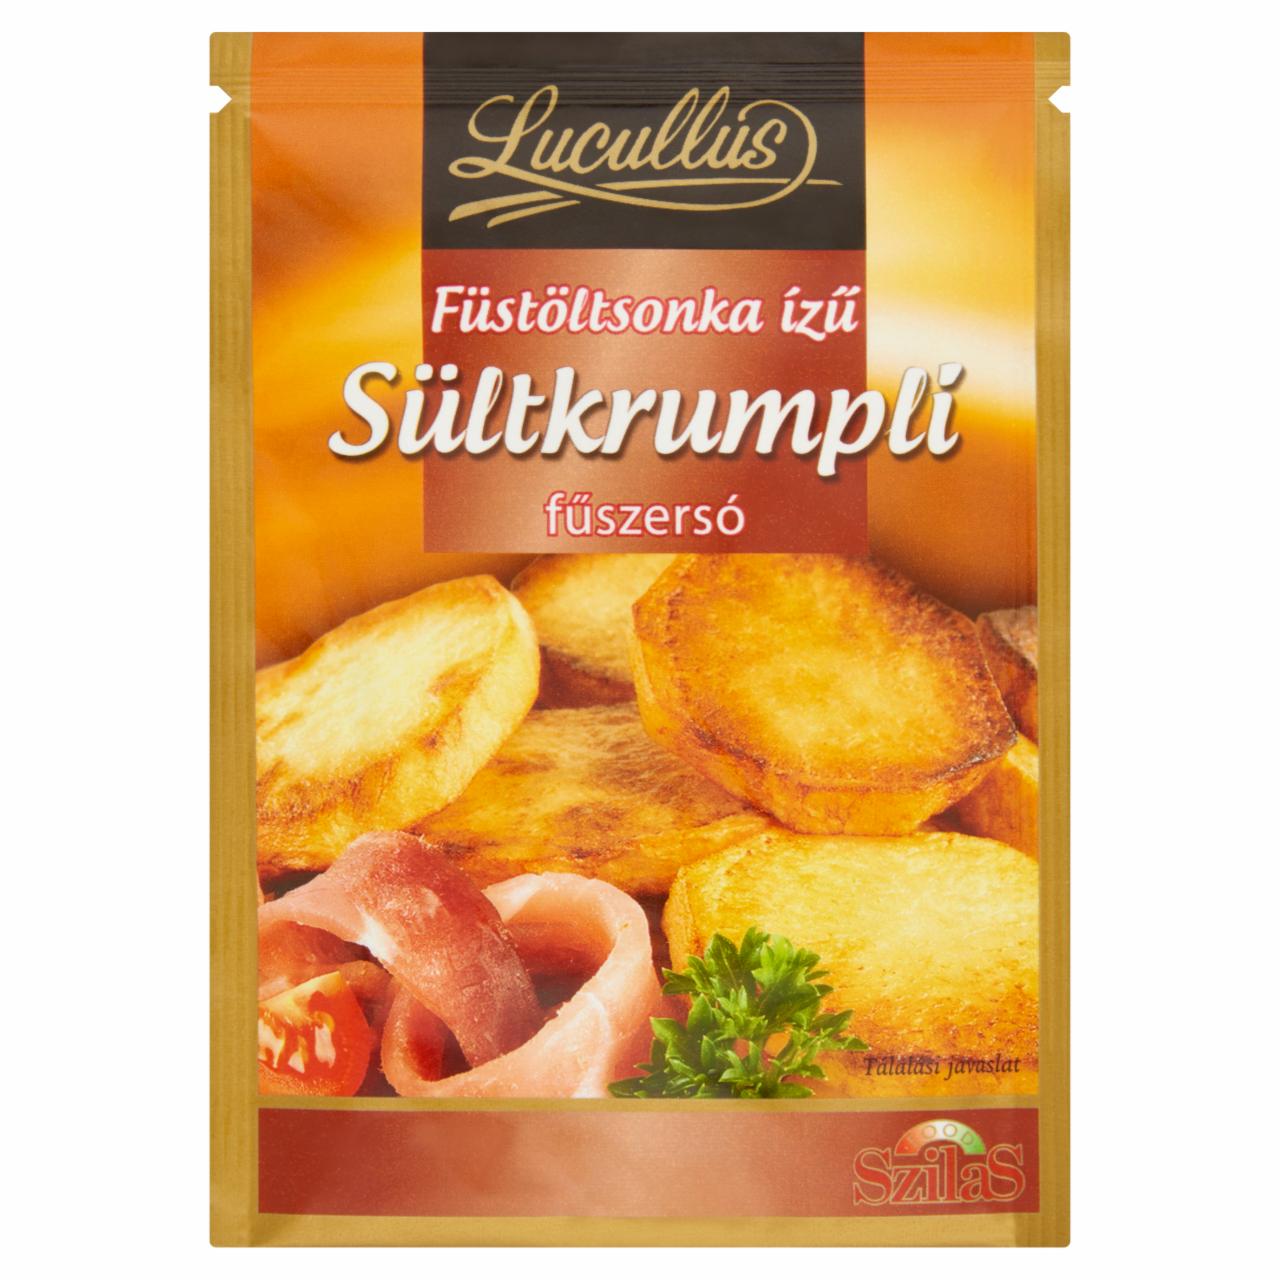 Képek - Lucullus füstöltsonka ízű sültkrumpli fűszersó 25 g